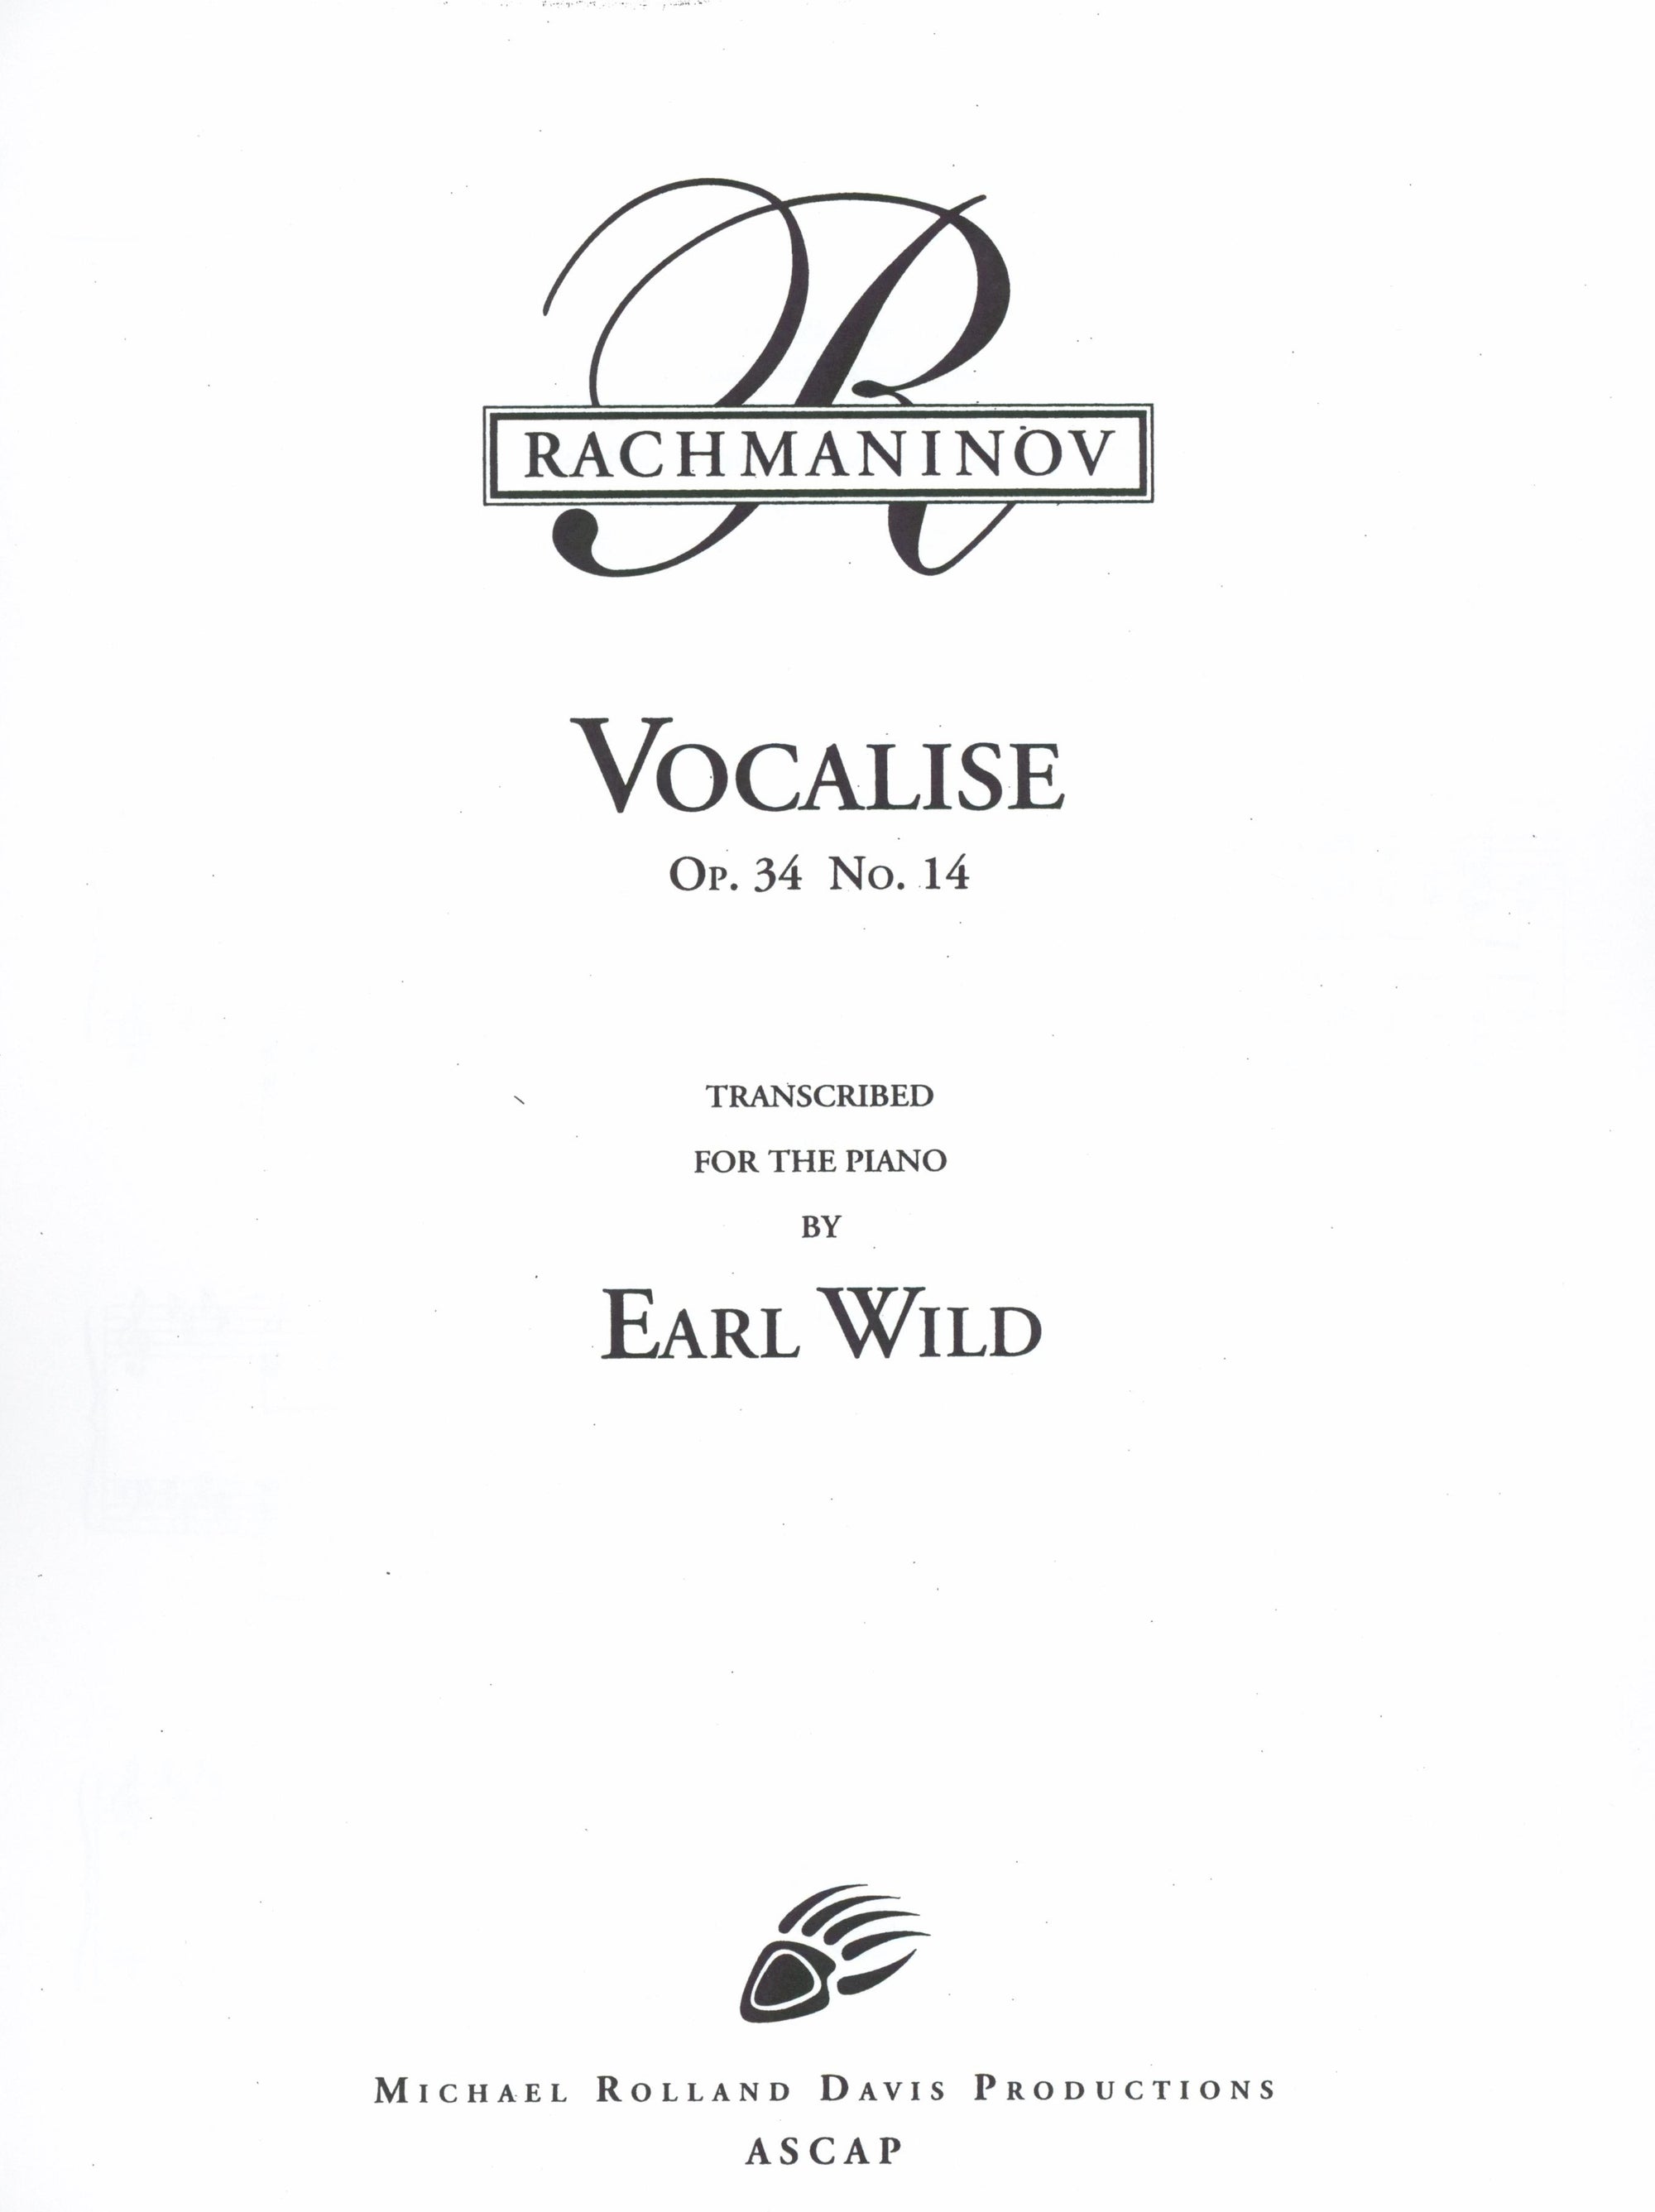 Rachmaninoff-Wild: Vocalise, Op. 34, No. 14